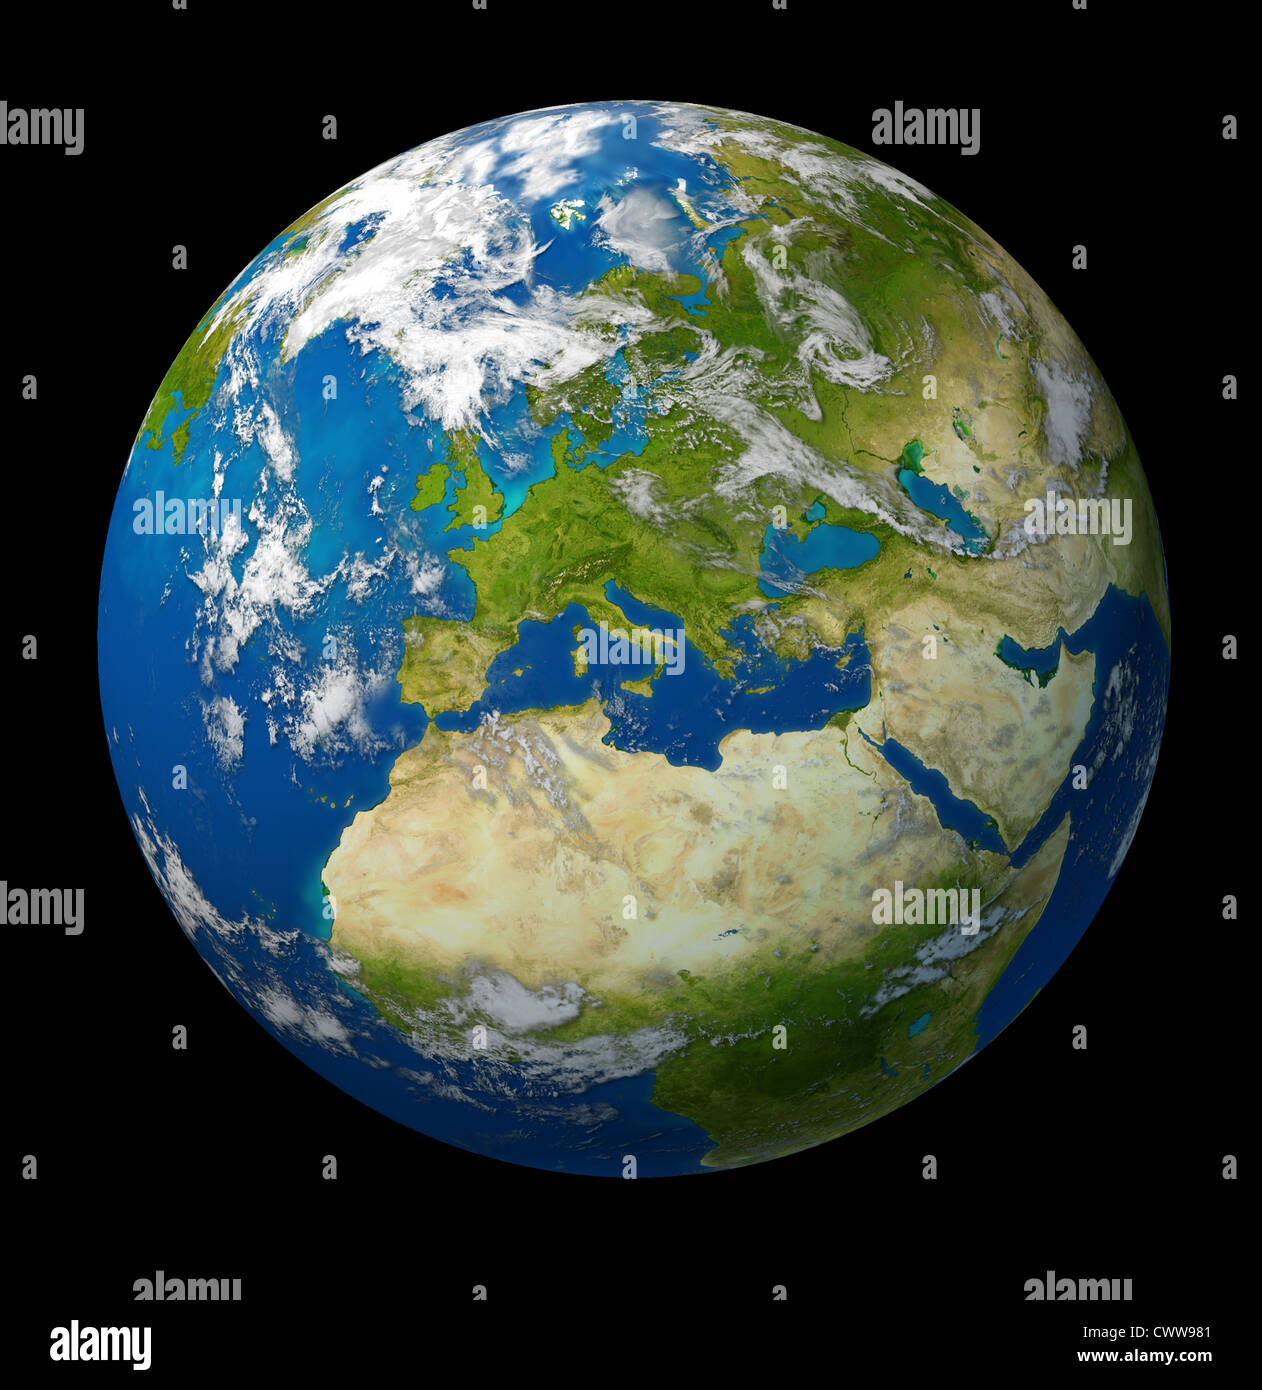 La planète Terre avec l'Europe et les pays de l'Union européenne dont la France Allemagne Italie et l'Angleterre entouré par l'océan bleu et nuages sur fond noir. Banque D'Images